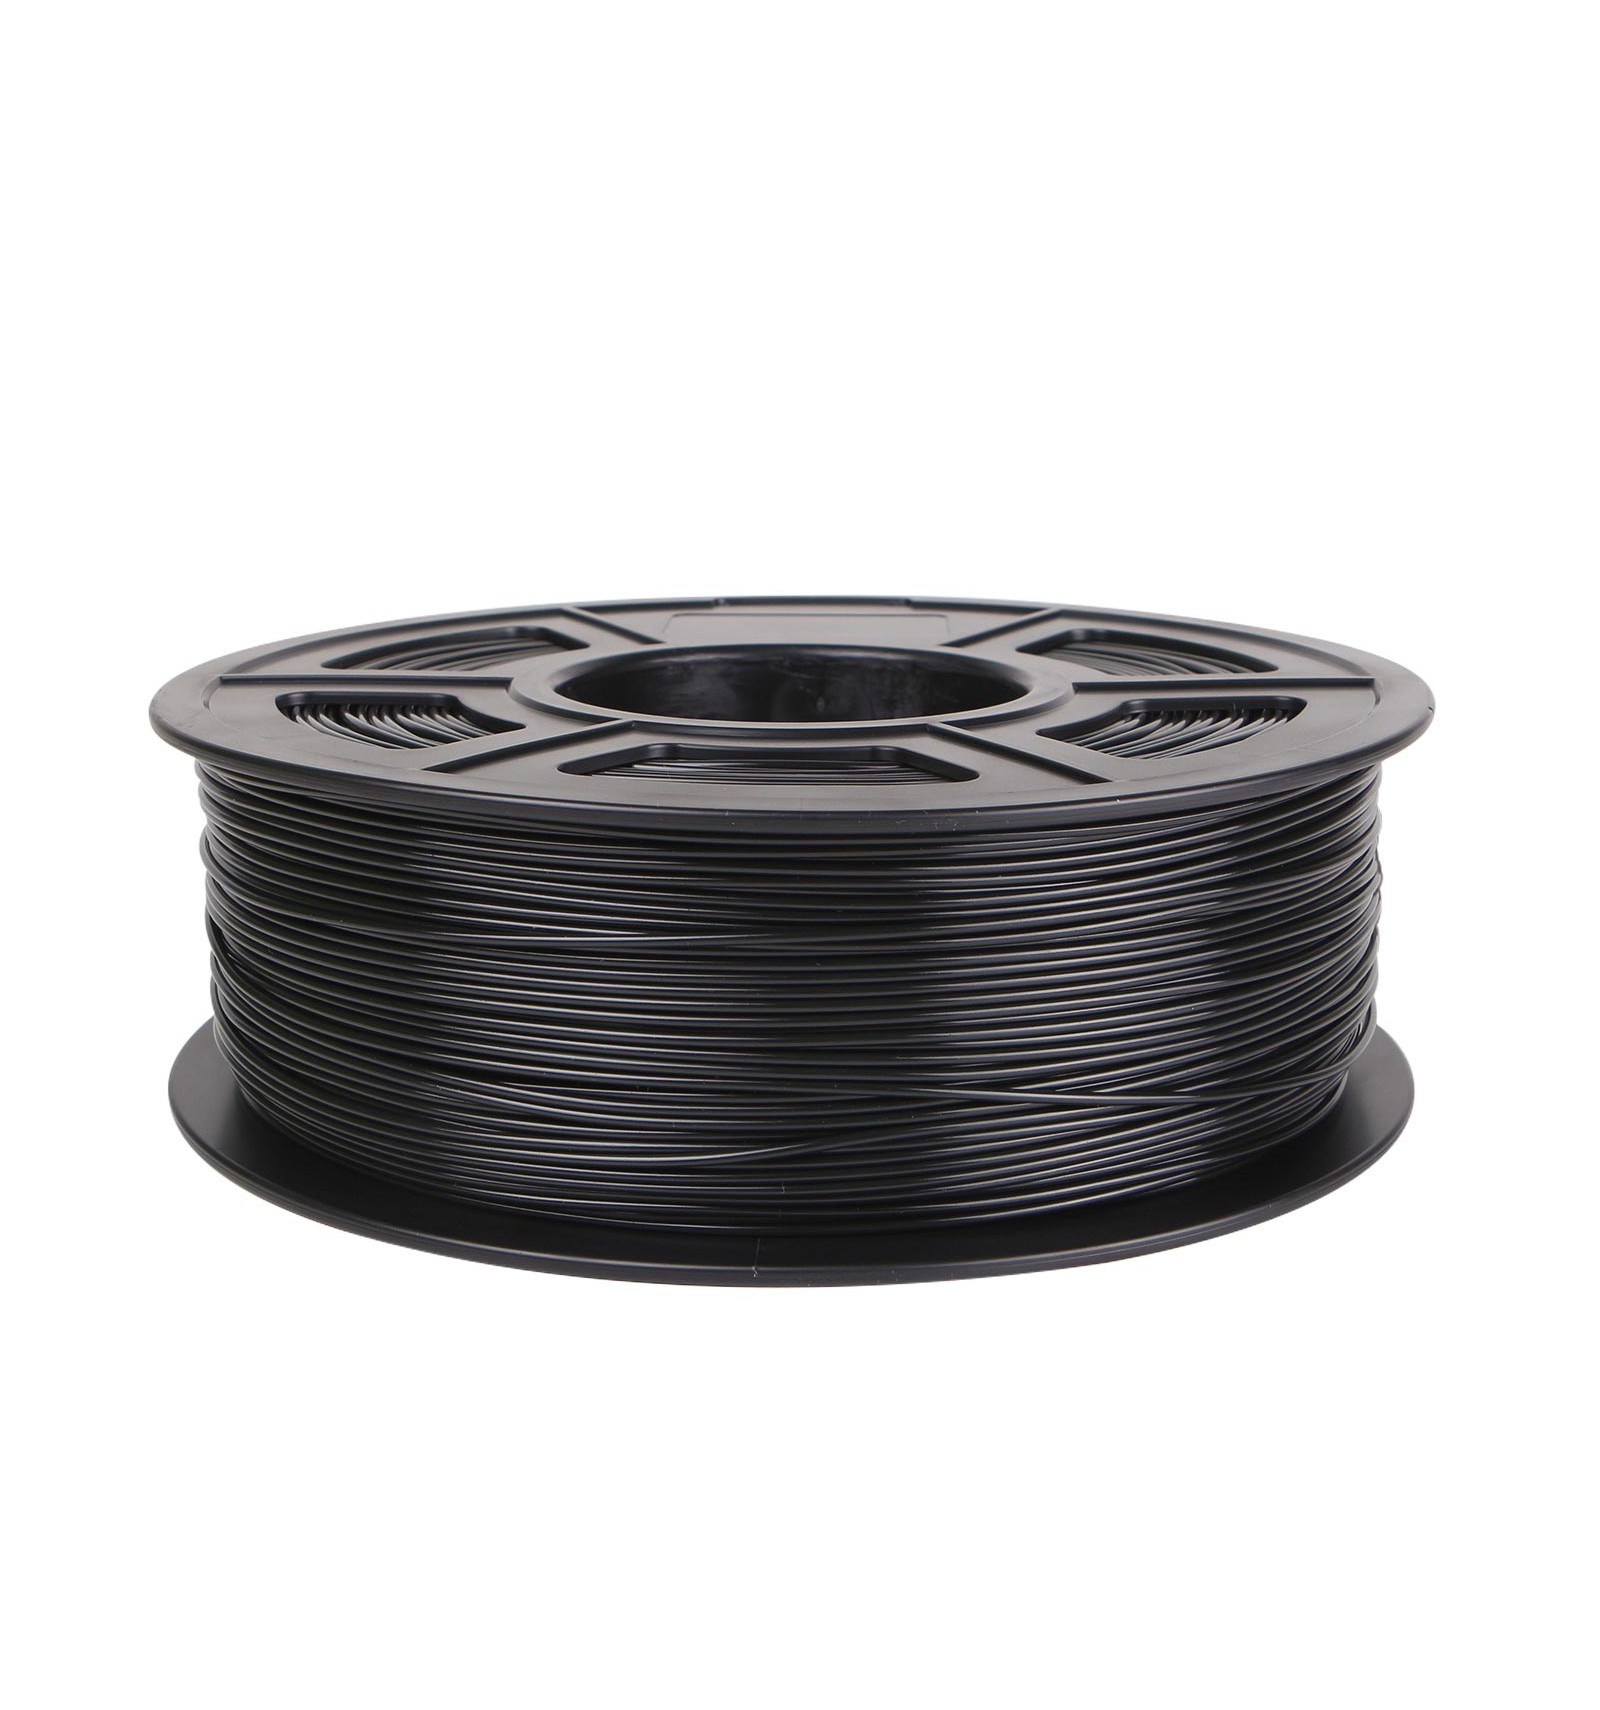 ASA Filament 1.75Mm Black, 1Kg ASA 3D Printer Filament, Heat & Weather  Resistant